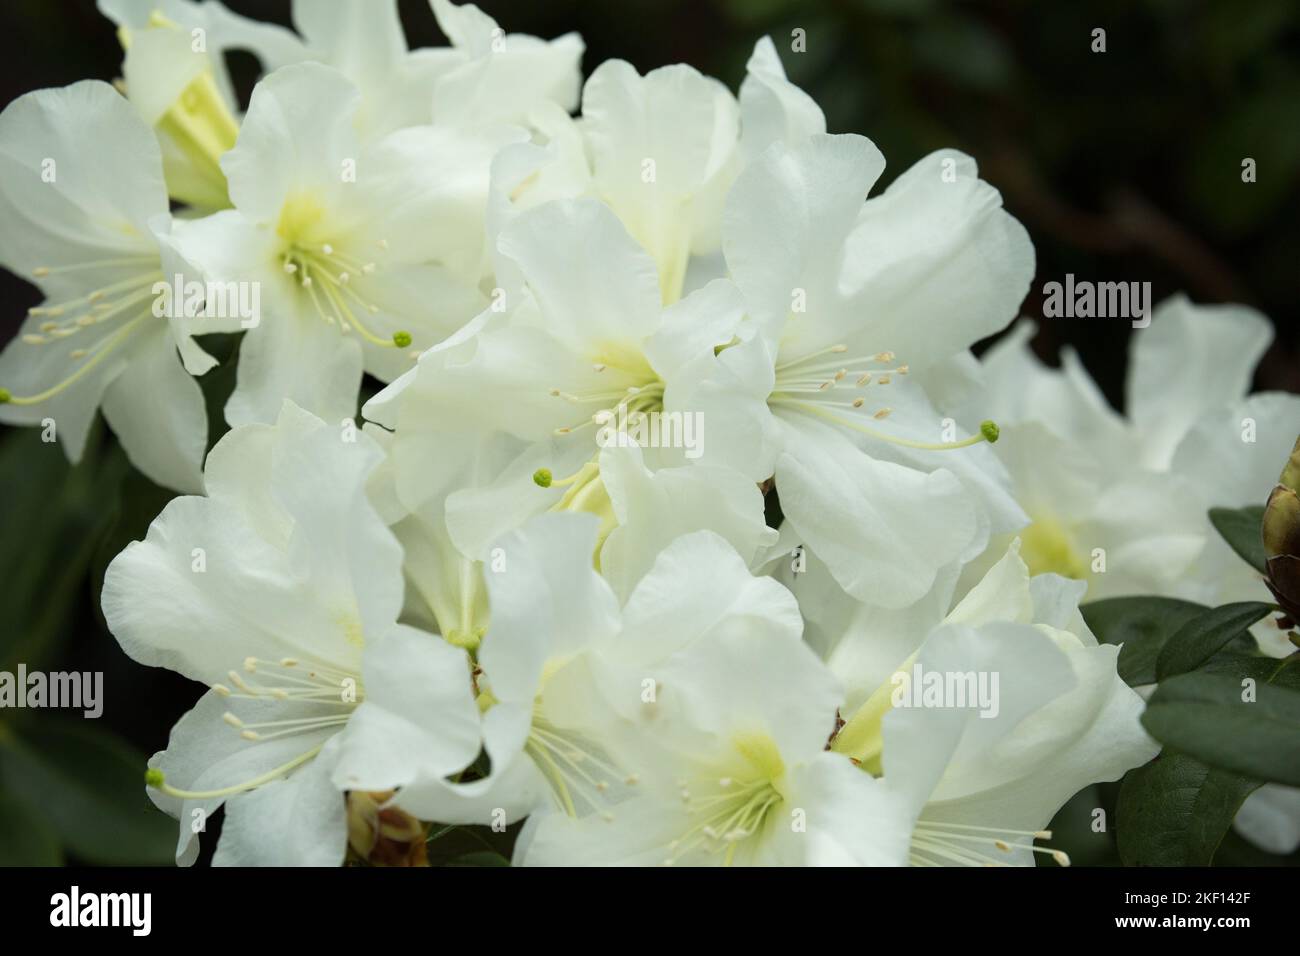 Fleurs de Rhododendron blanc vif. Le noyau des fleurs a un délicat motif jaune tacheté, les plumeaux sont blancs. Banque D'Images